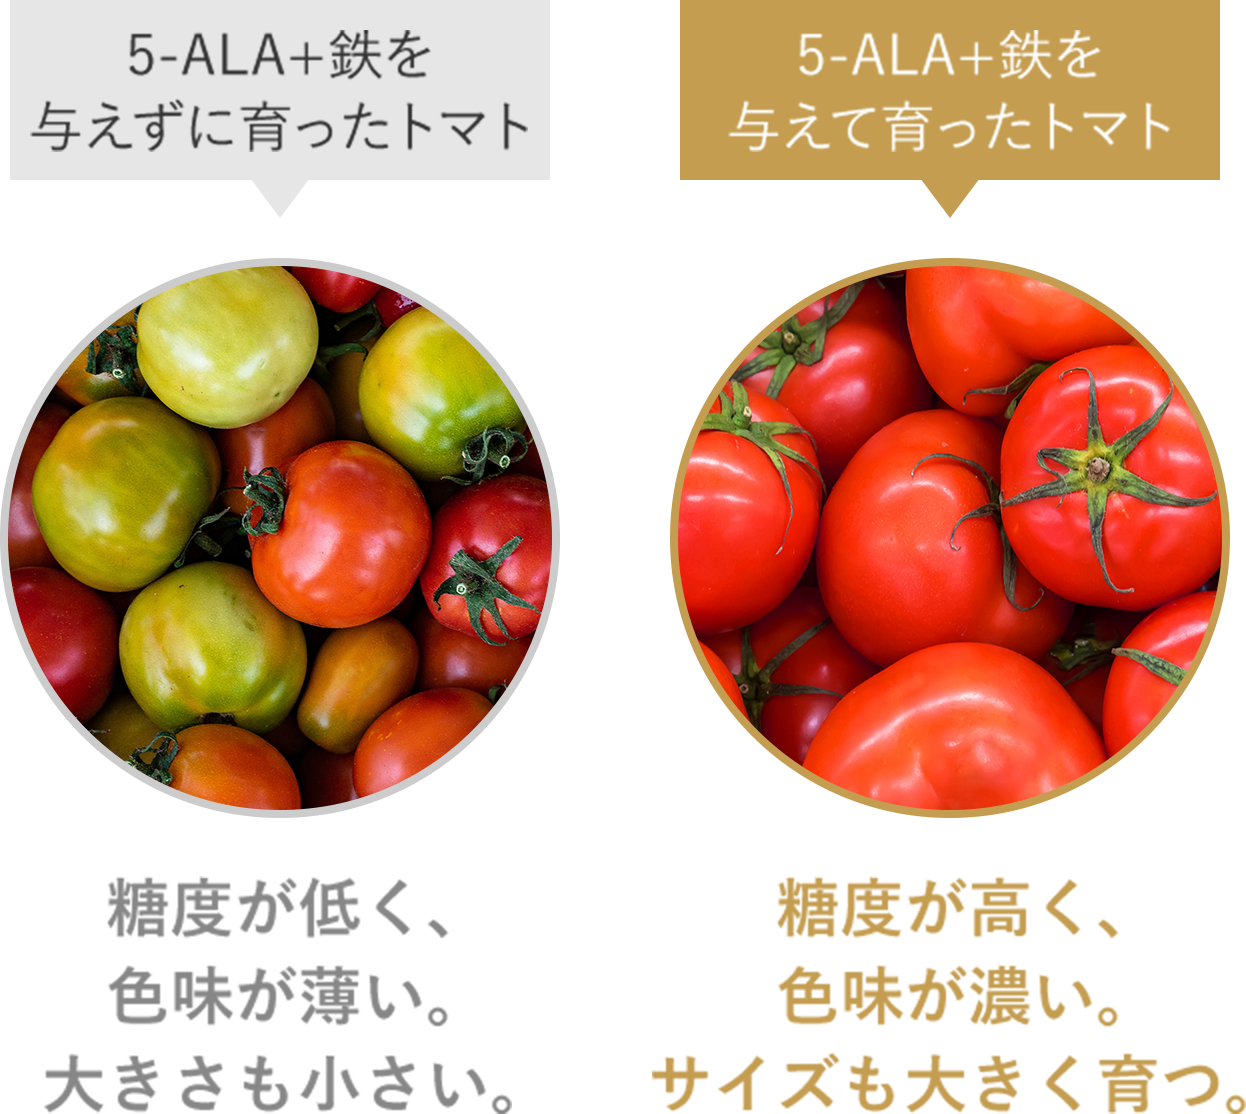 5-ALA+鉄を与えて育ったトマトは5-ALA+鉄を与えずに育ったトマトに比べて糖度が高く、色味が濃い。サイズも大きく育つ。